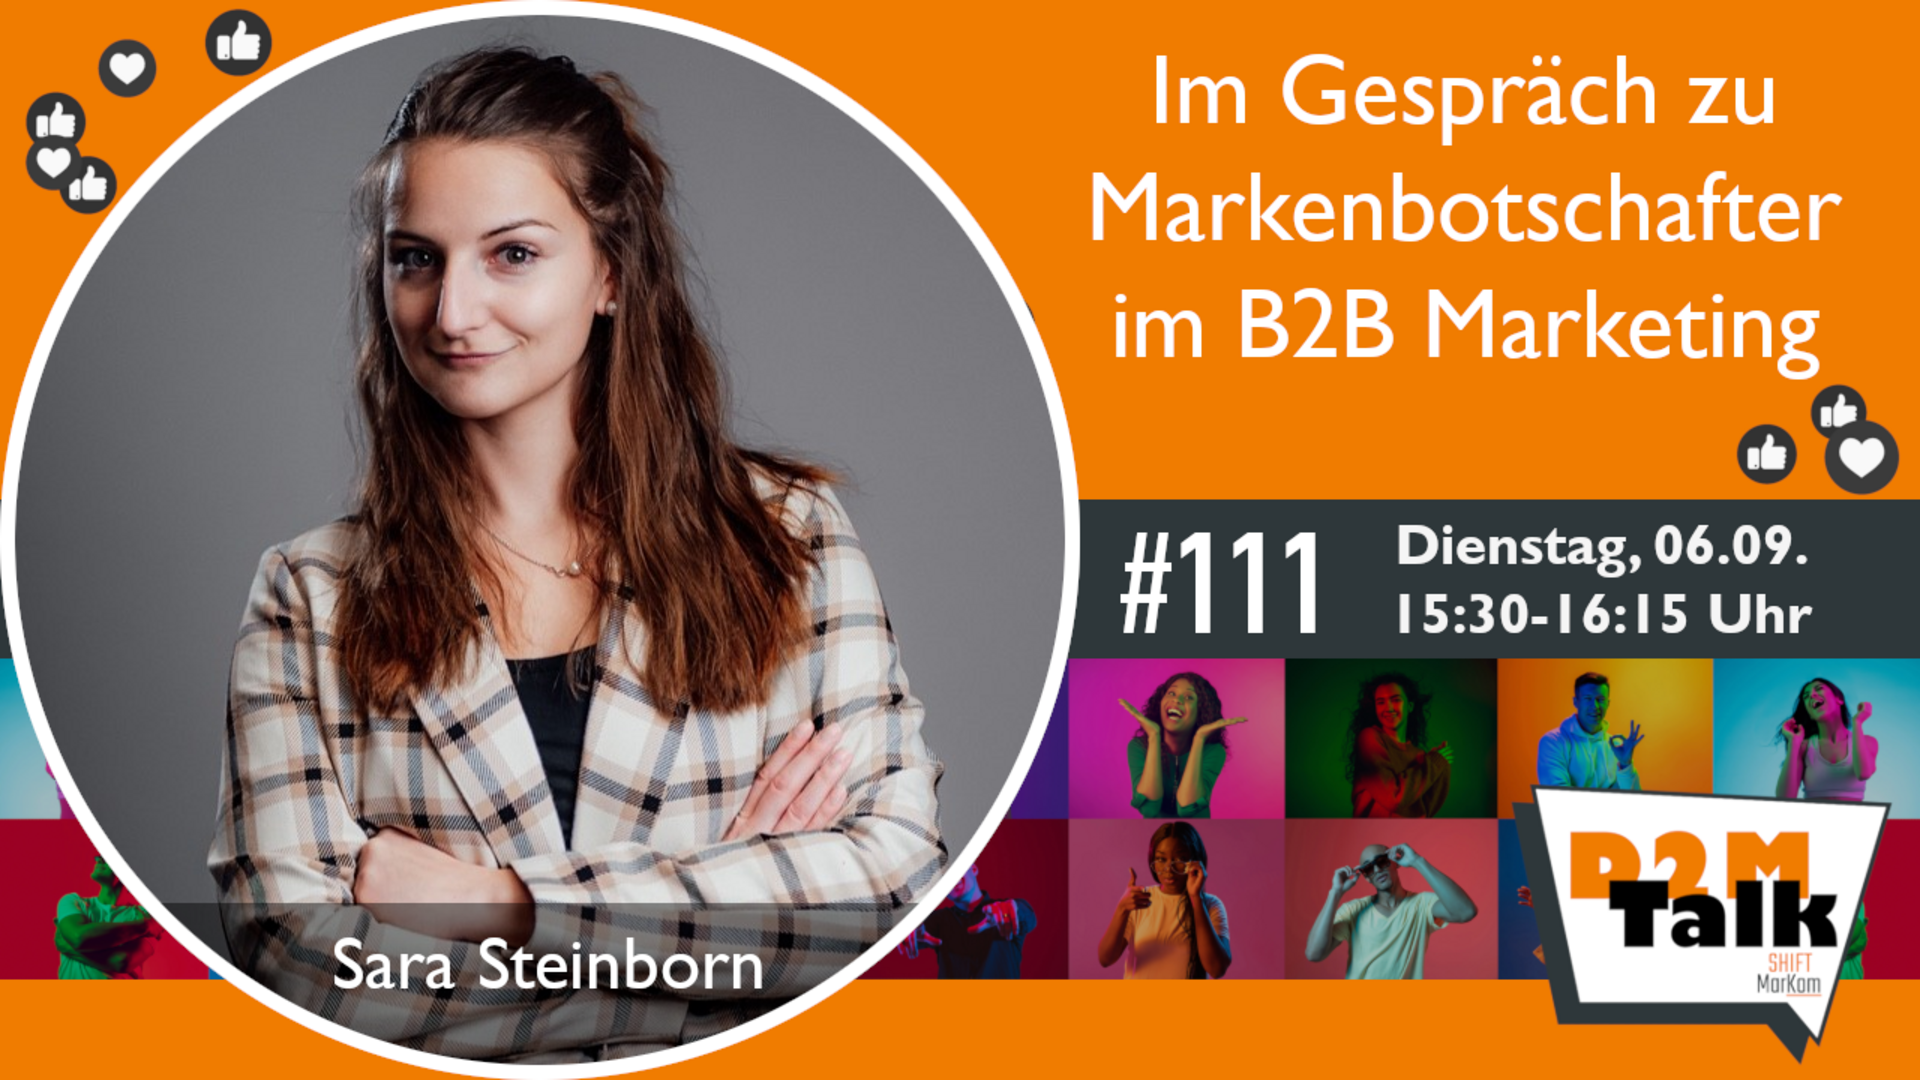 Im Gespräch mit Sara Steinborn zum Einsatz von Markenbotschaftern im B2B Marketing